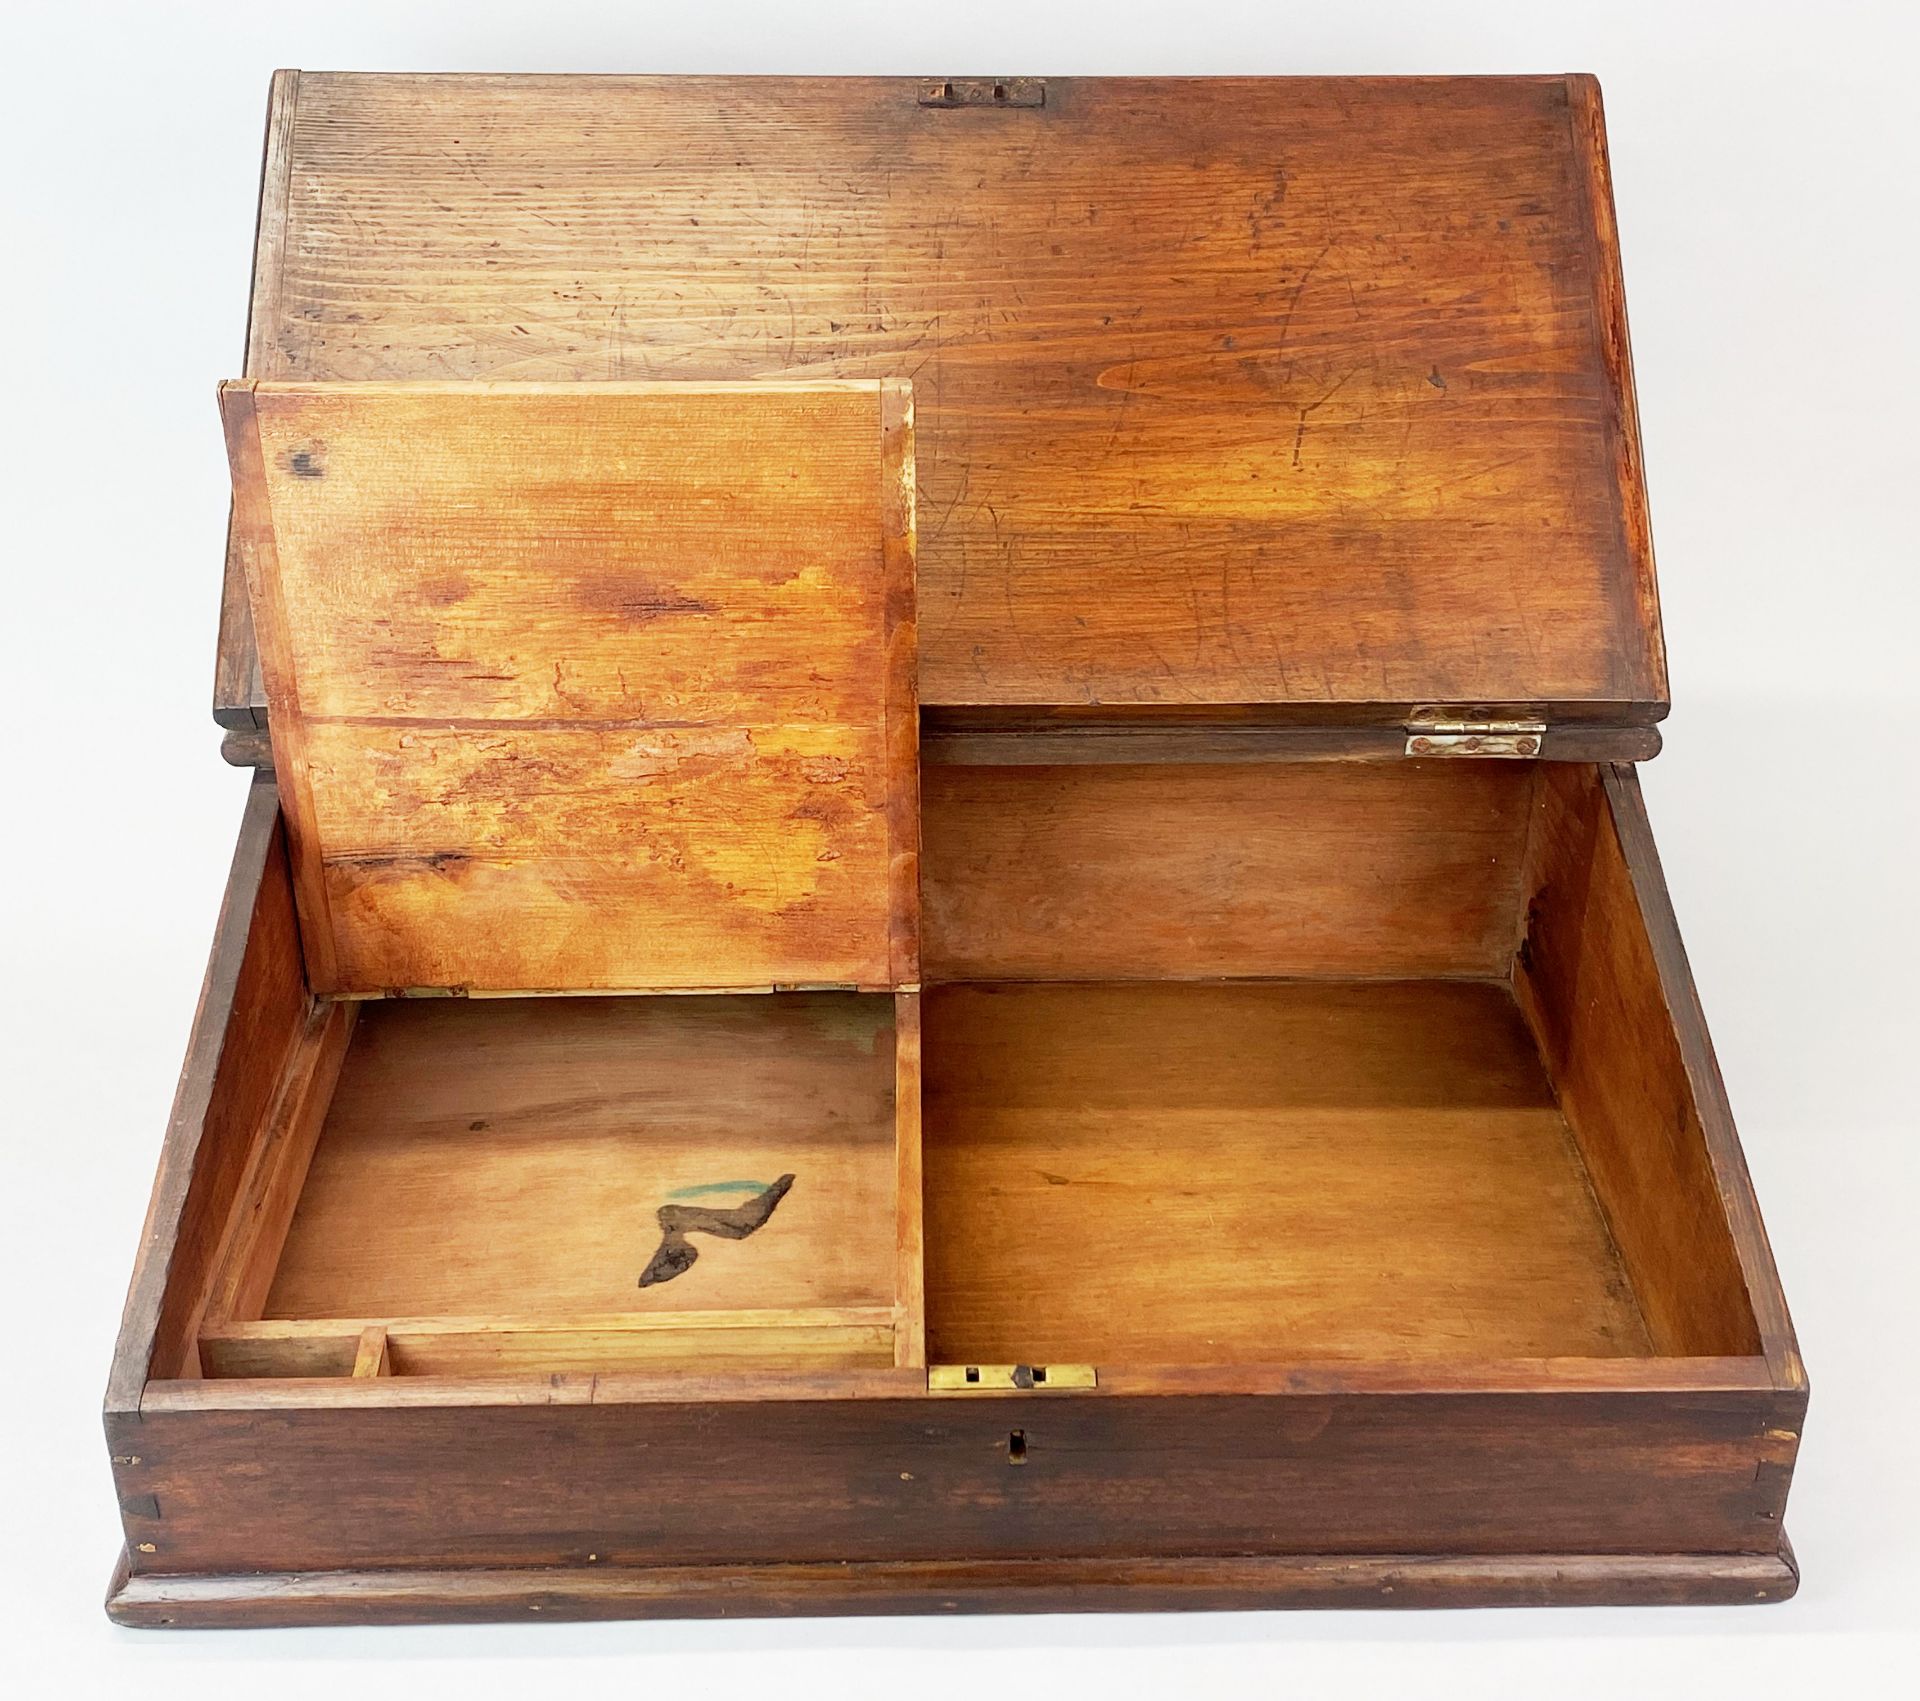 A Victorian pine lap desk, 52 x 36 x 17cm. - Image 3 of 3